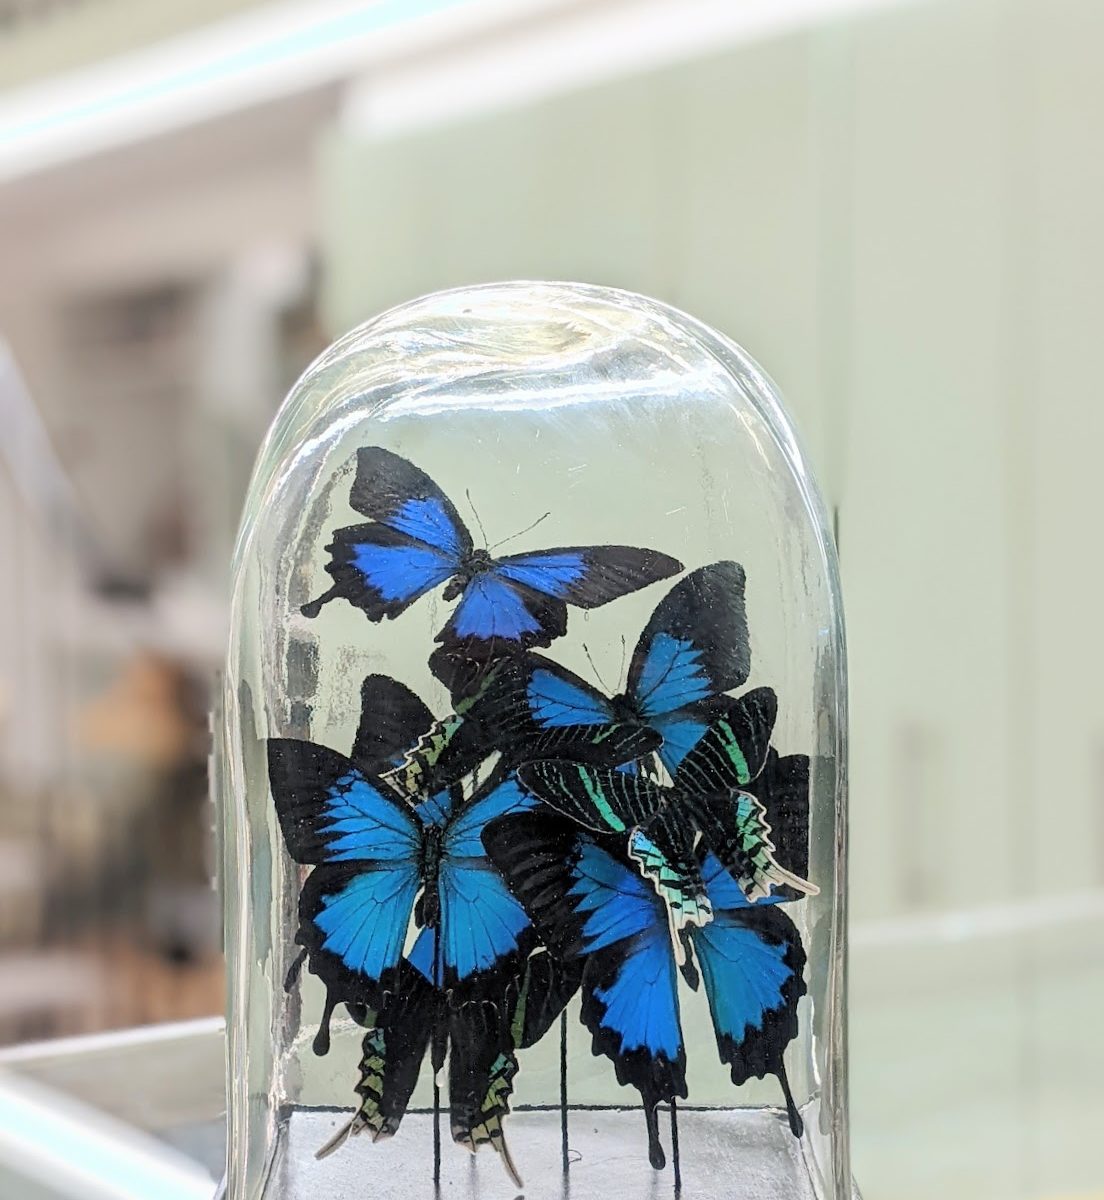 stolp blauwe vlinders